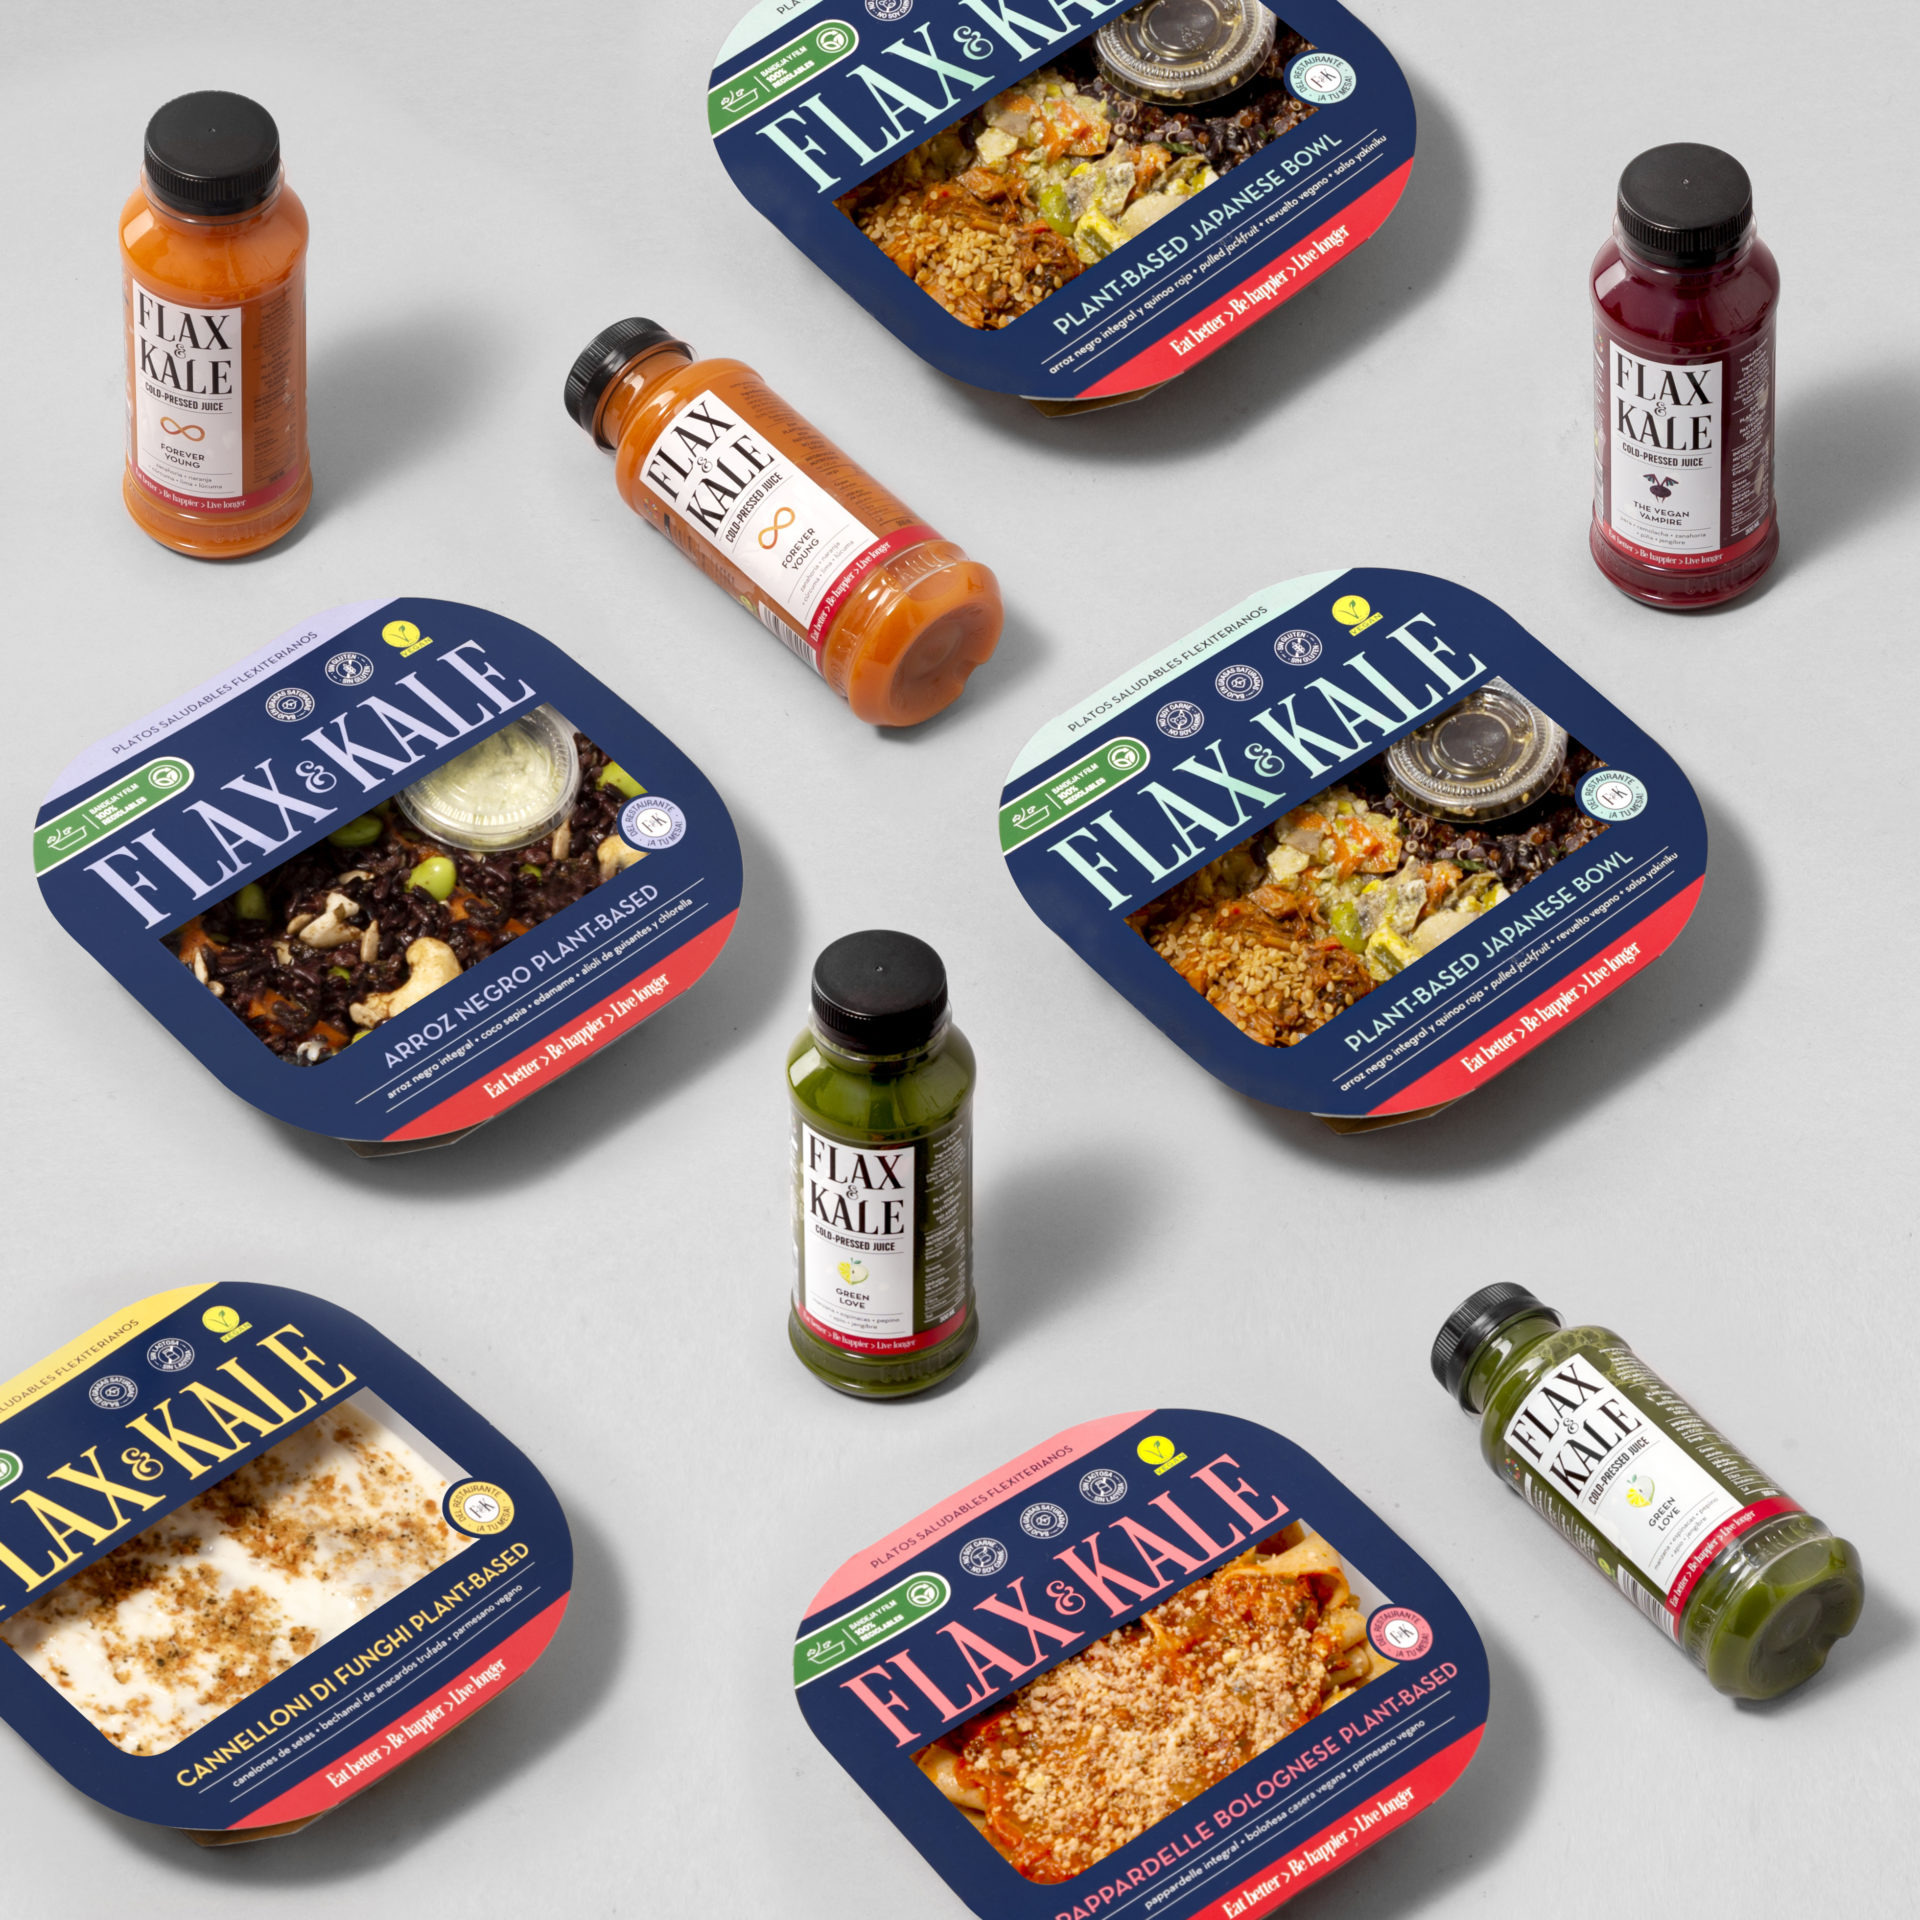 El grupo de restauración Teresa Carles Healthy Foods inicia la distribución en supermercados de platos preparados de su marca Flax & Kale.